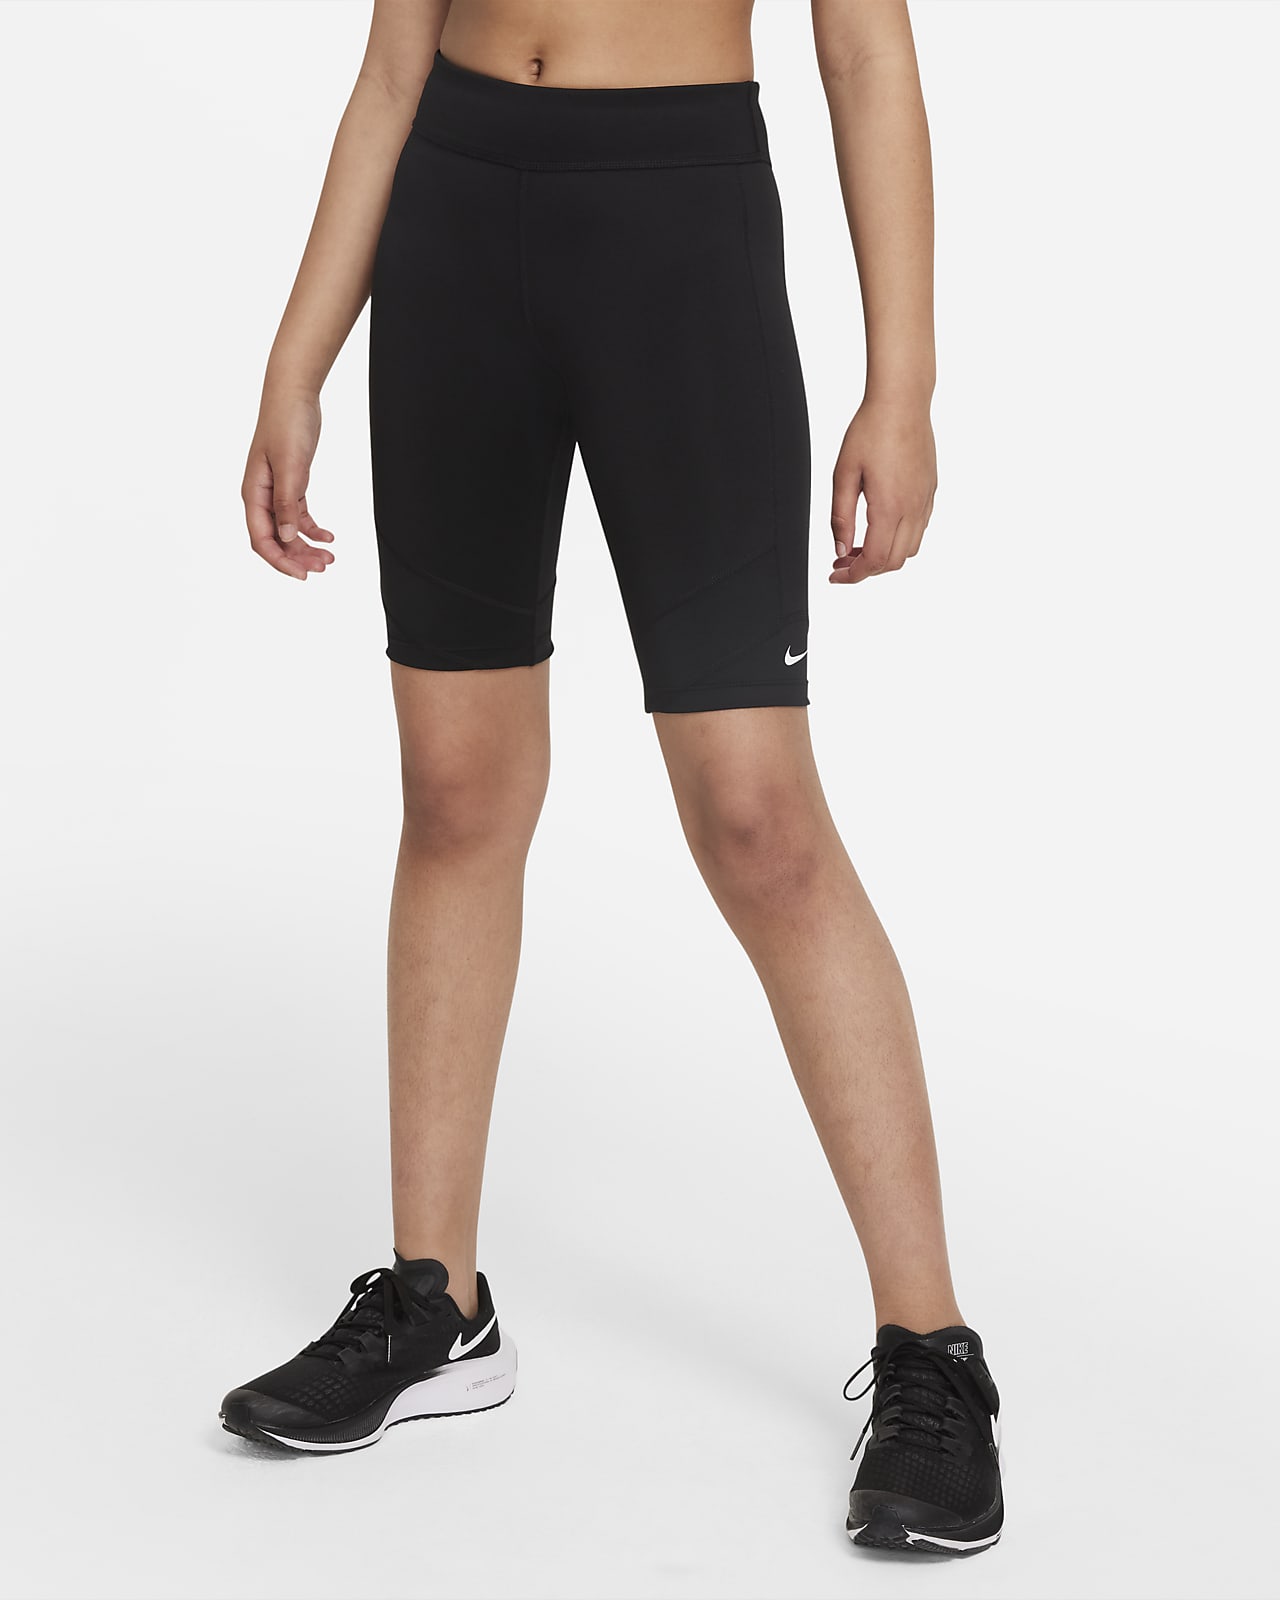 Nike Dri-FIT One Bike Shorts mit Print für ältere Kinder (Mädchen)